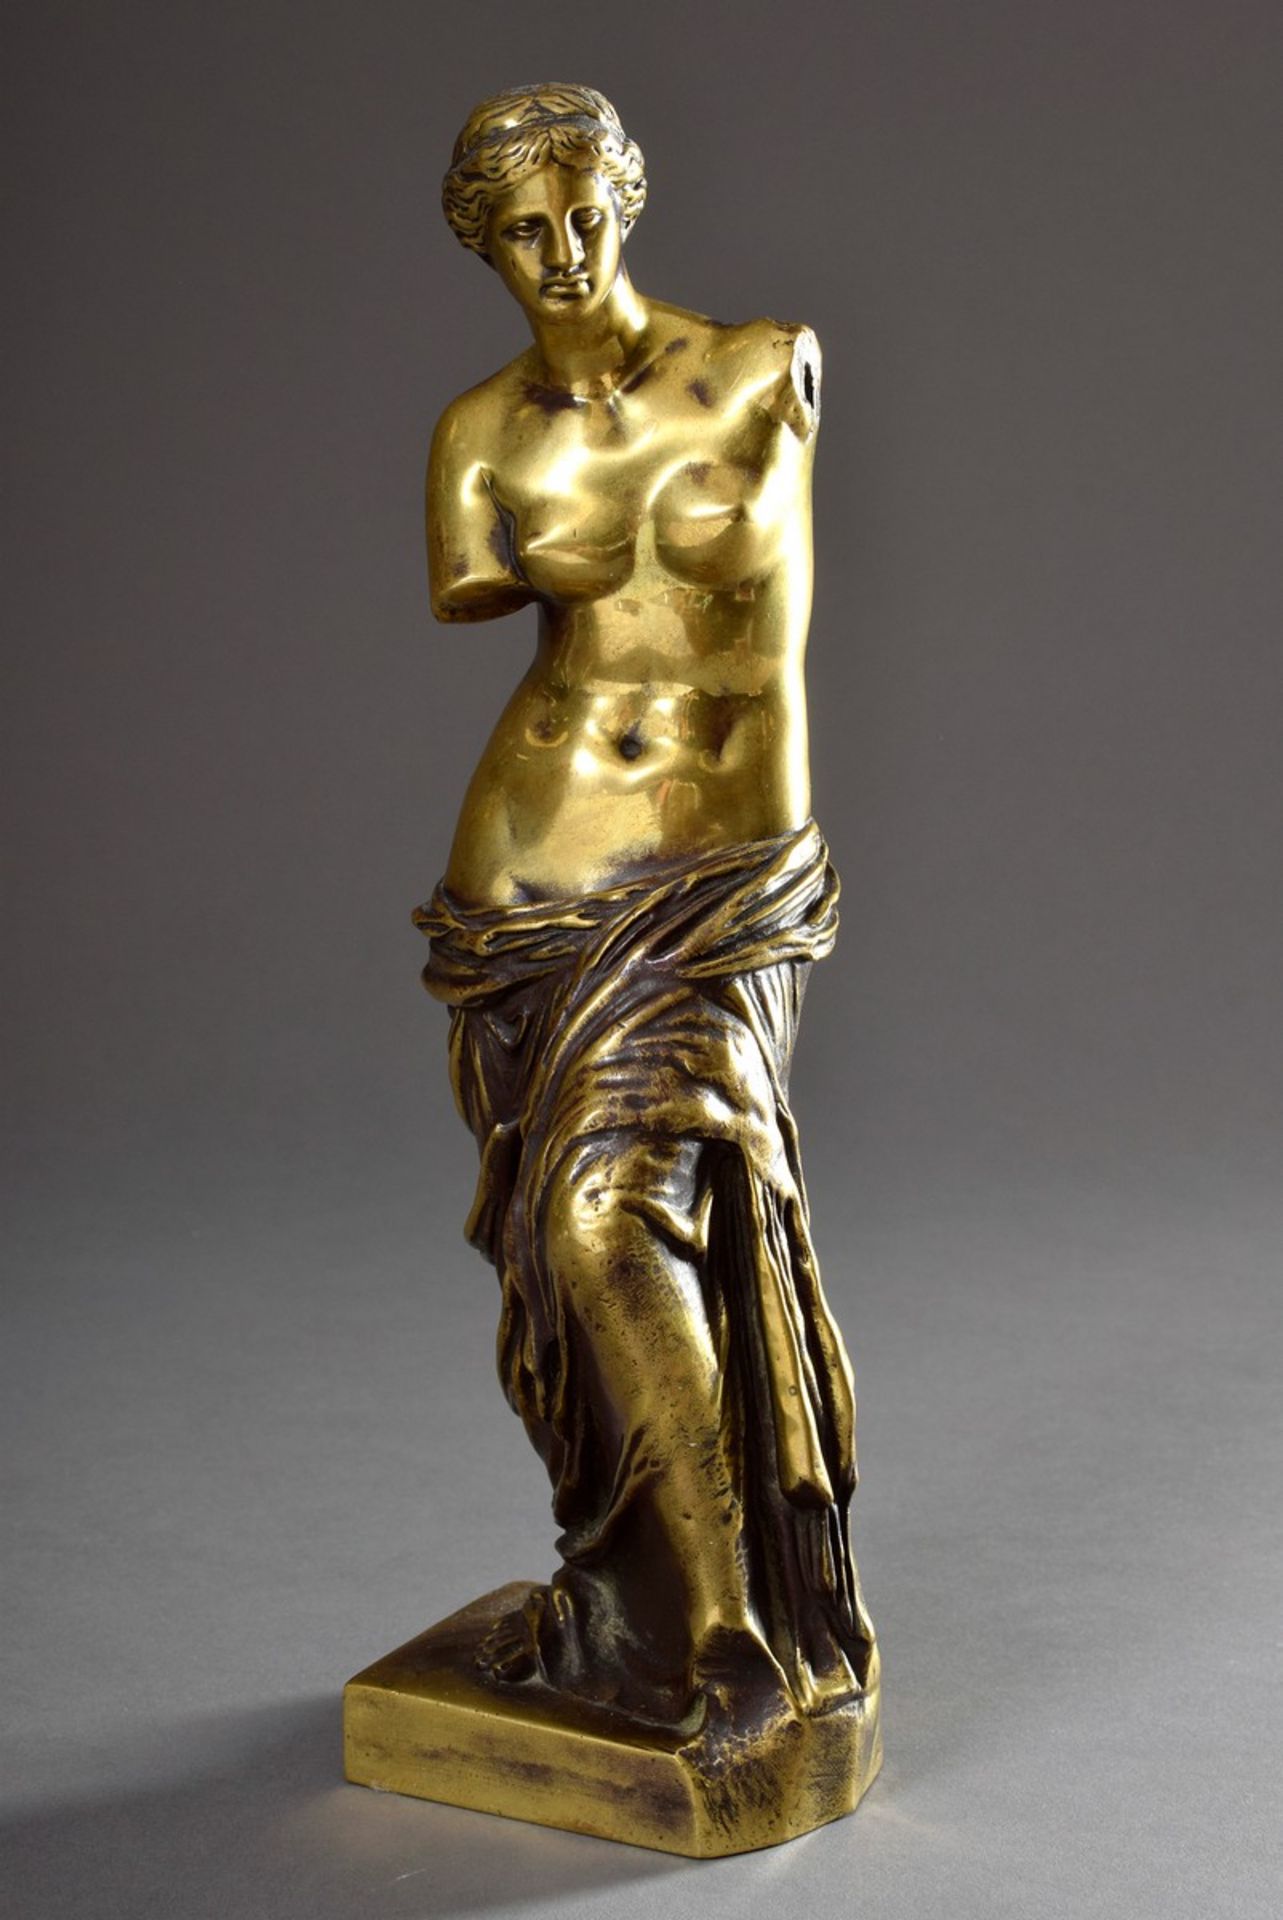 Gelbguss Plastik "Venus von Milo", Gießerstempel: "Rtion Sauvage" (R. Liod Sauvage), mit Resten